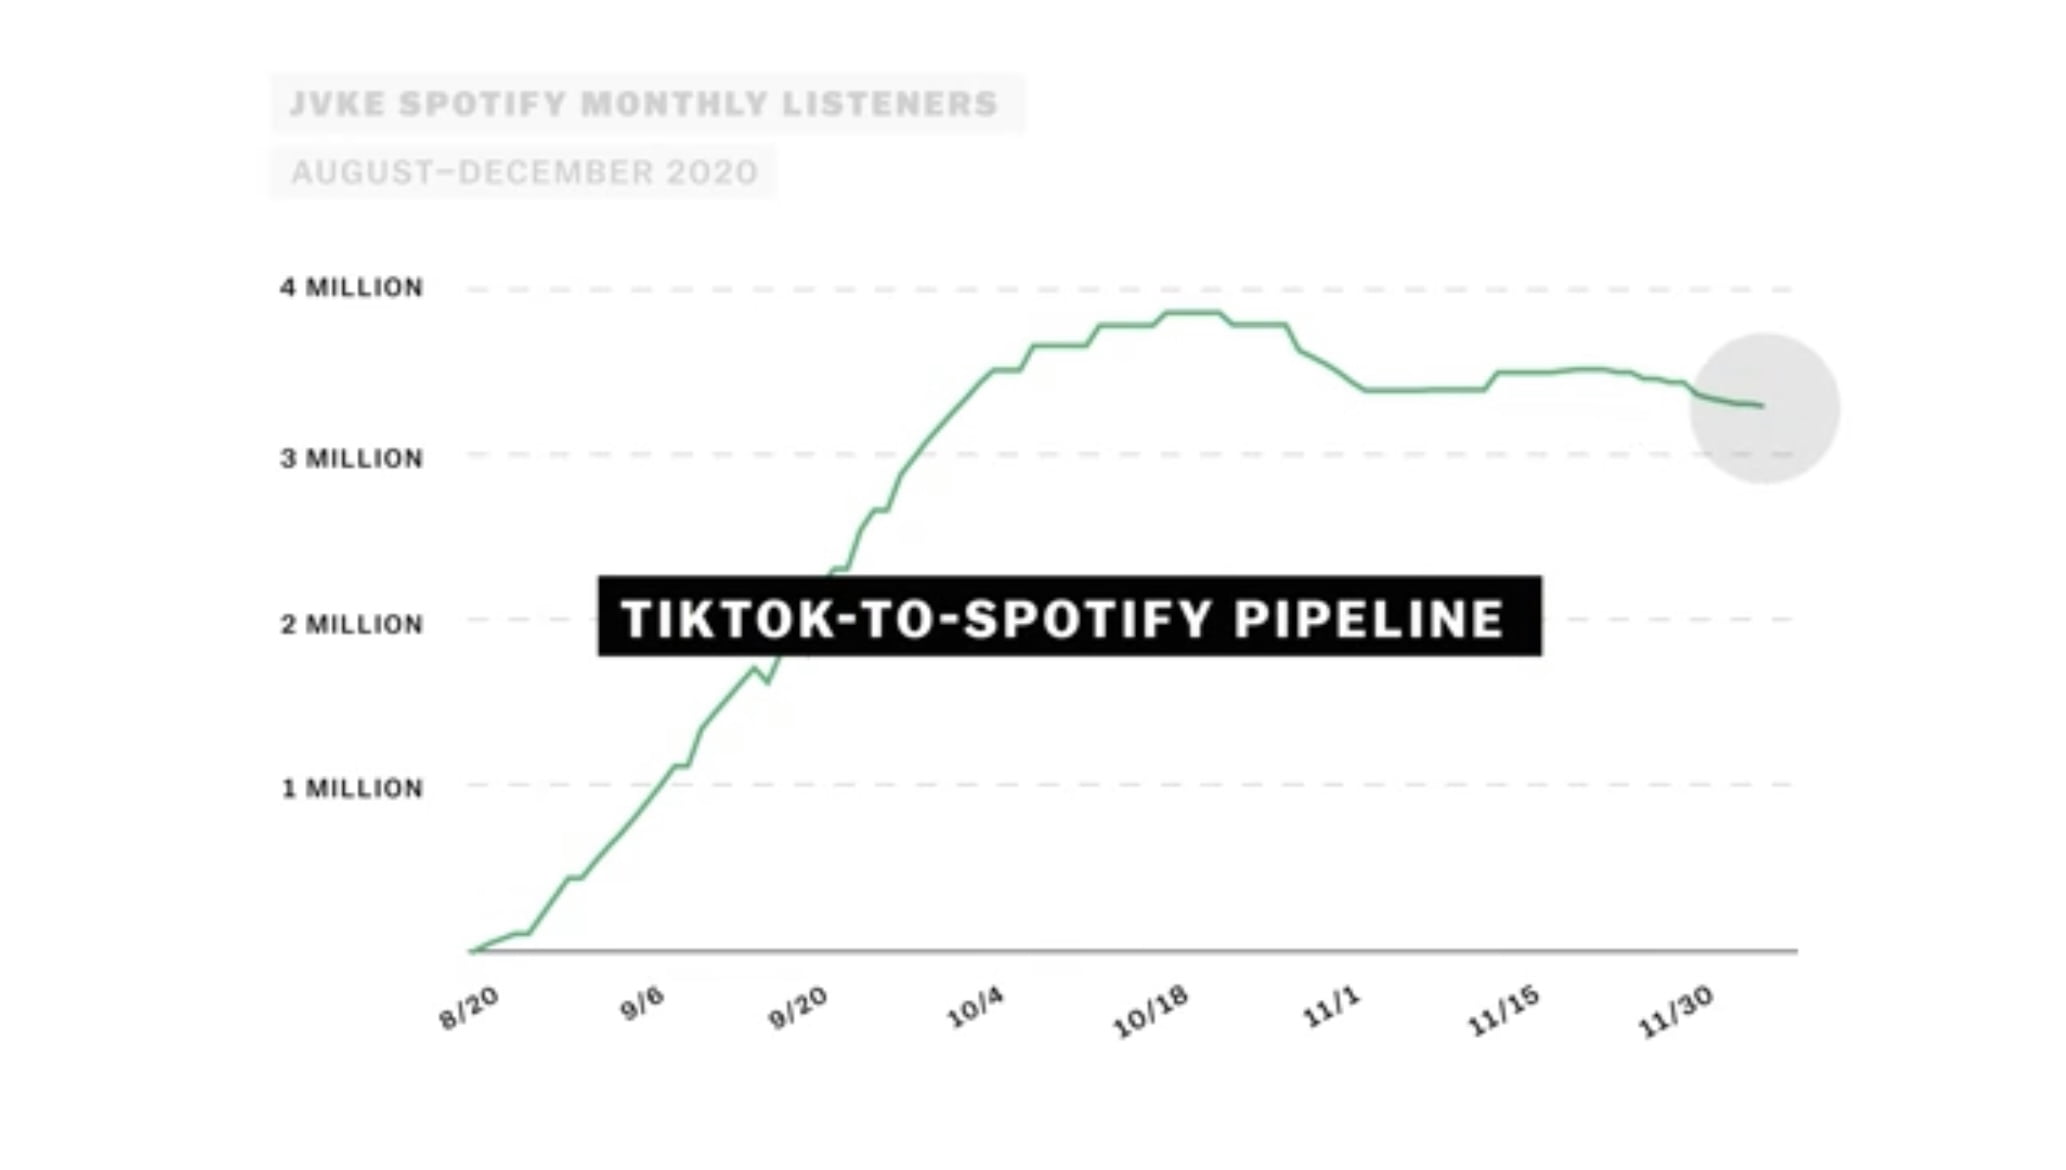 De TikTok-Spotify-Pipeline zorgt voor meer onafhankelijke artiesten